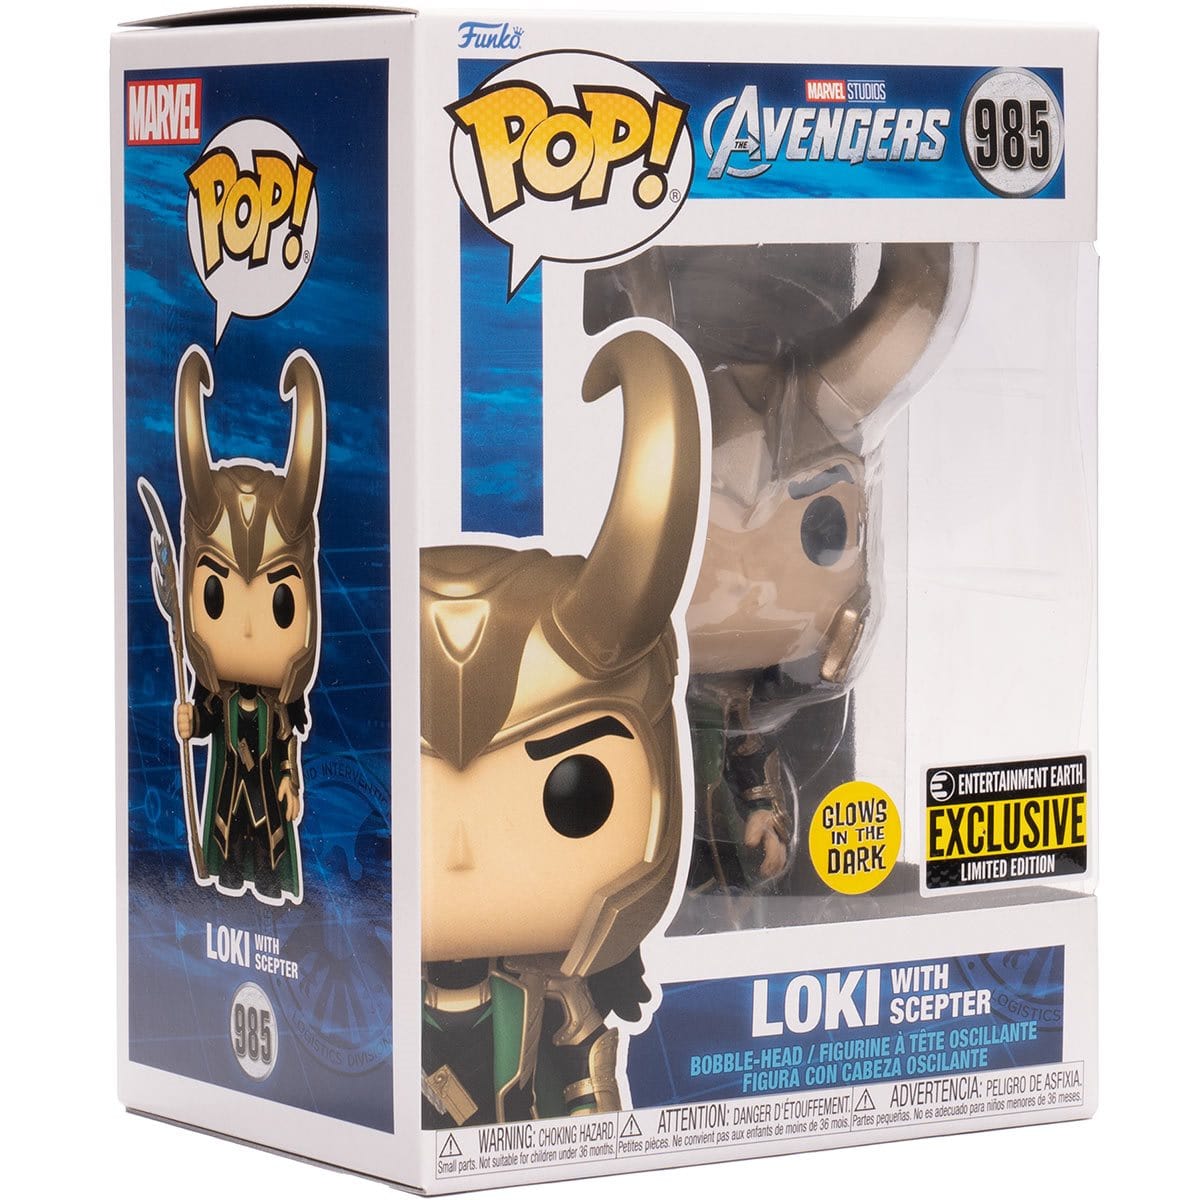 Funko POP! Marvel Loki with Scepter - #985 Glow Exclusive - Pop-O-Loco - Funko